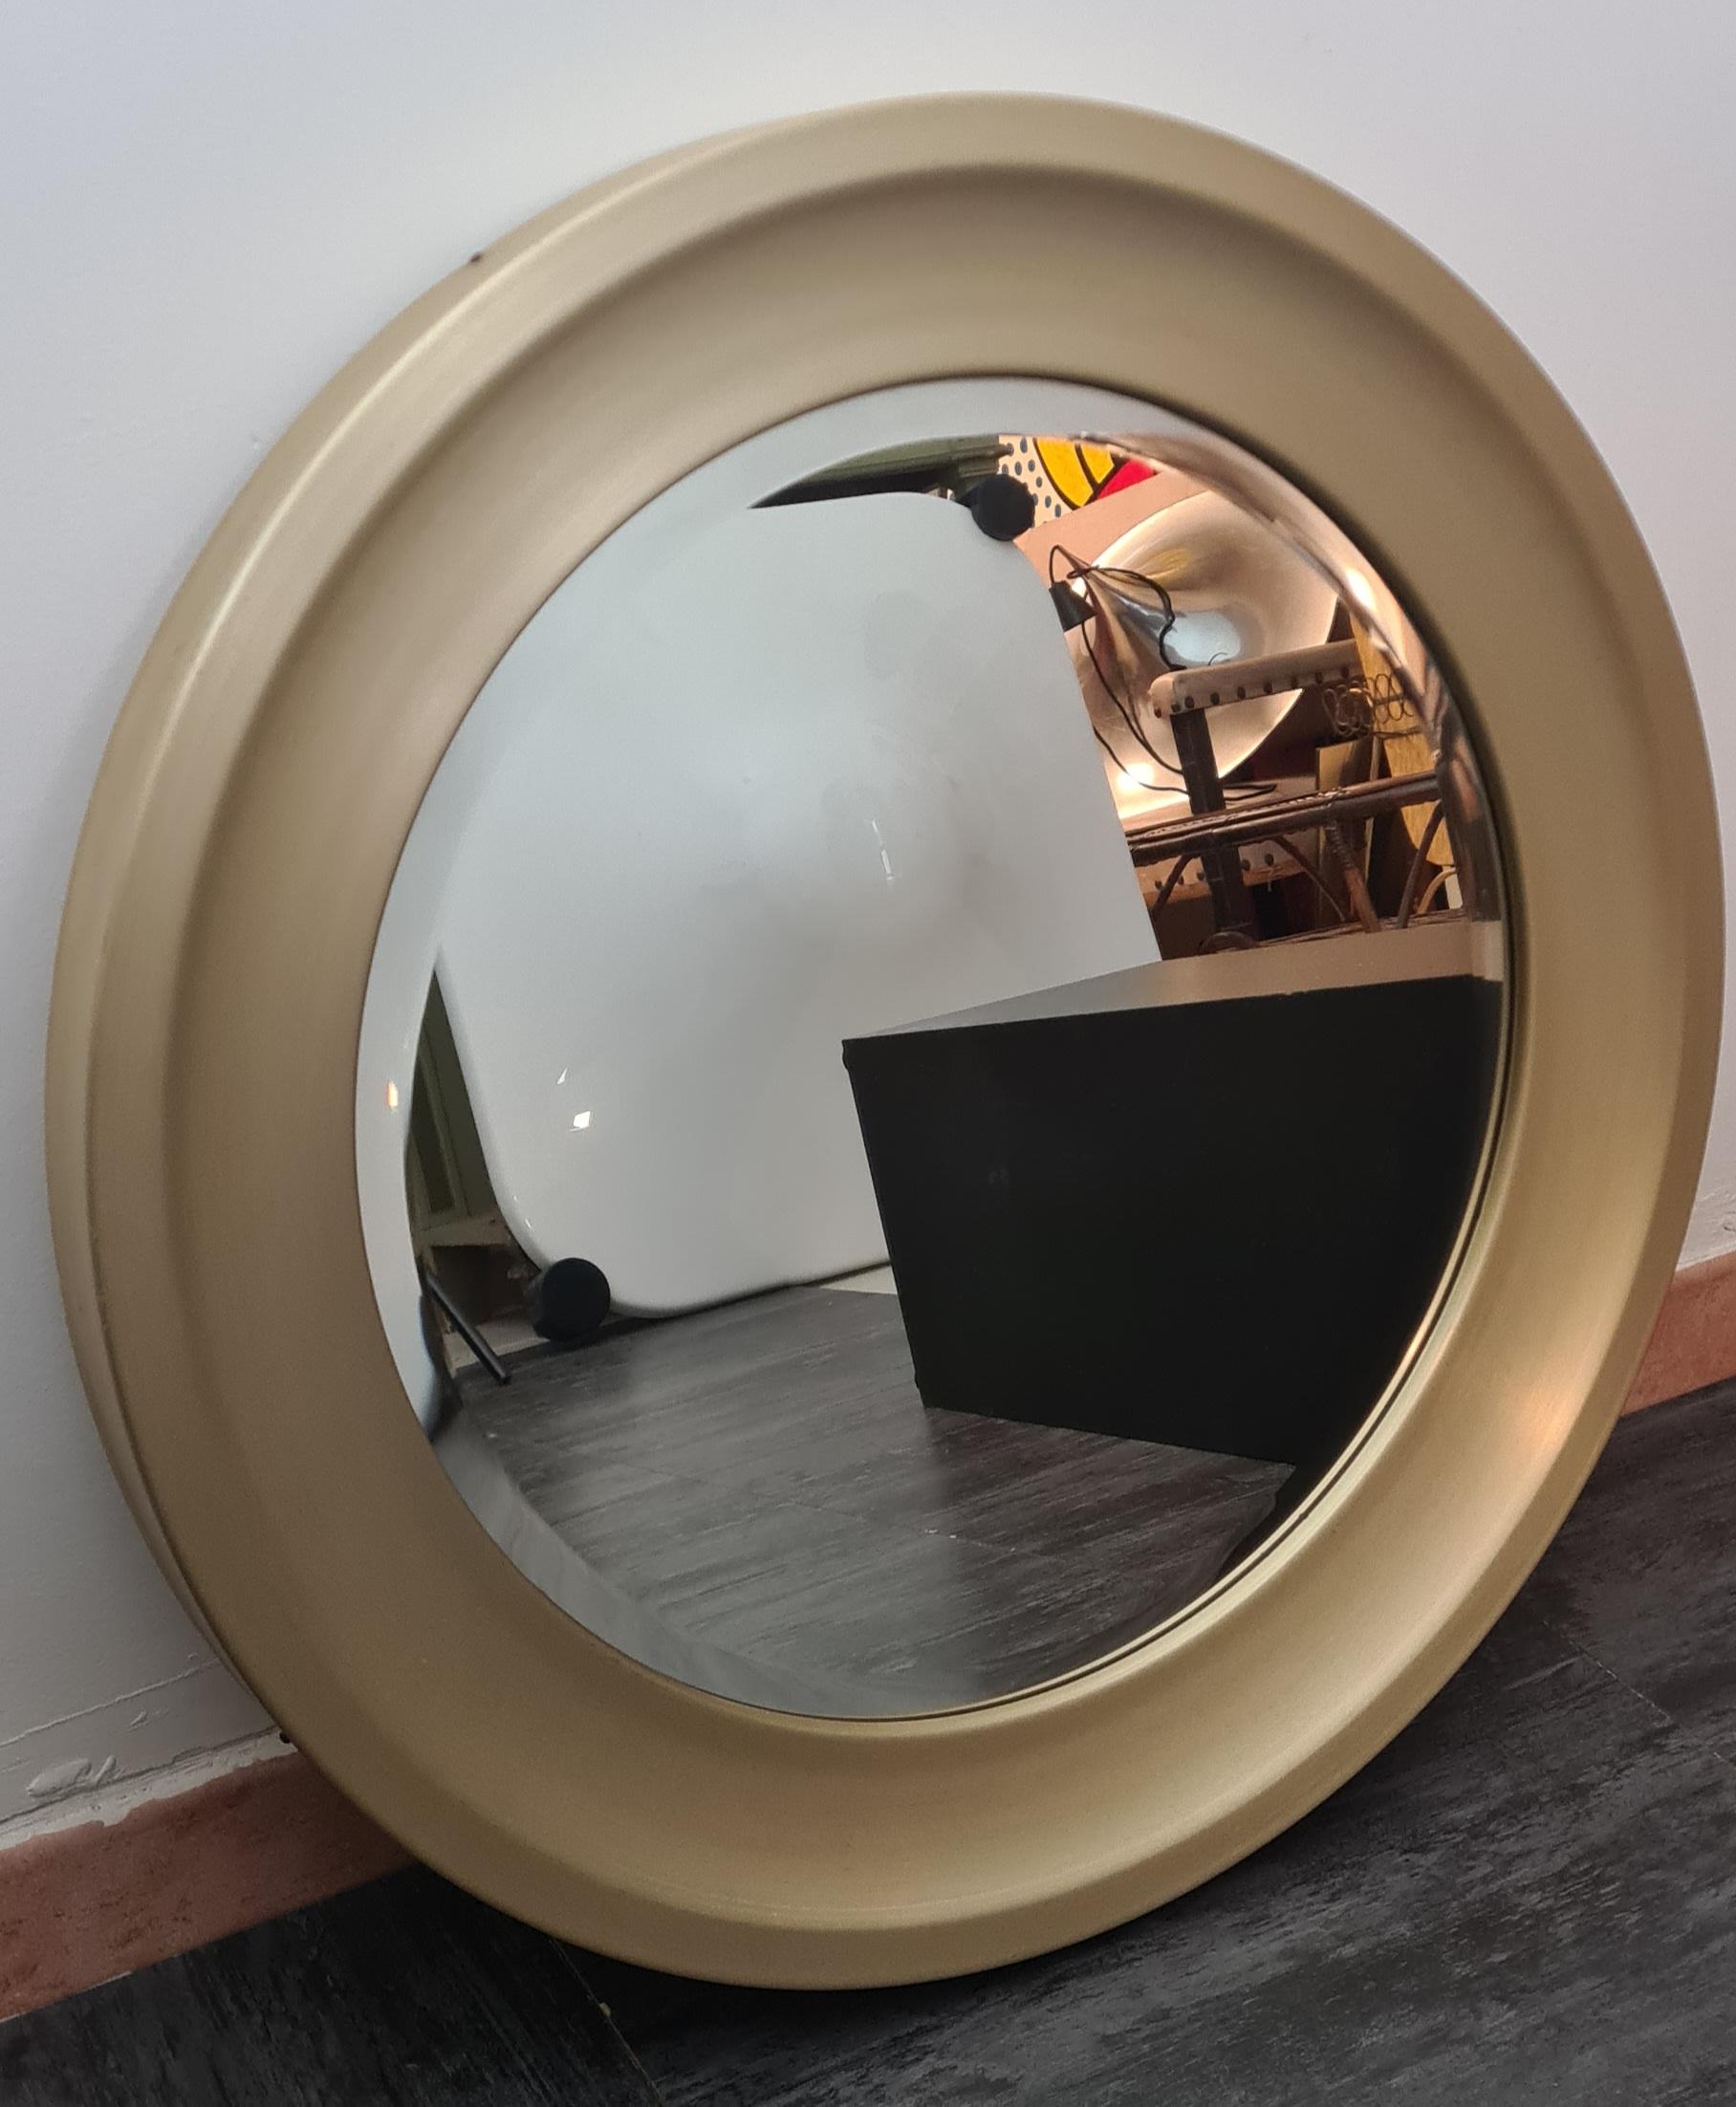 Miroir rond conçu par Sergio Mazza pour Artemide.

Miroirs raffinés de forme ronde et à bord biseauté avec un cadre en aluminium doré et brossé.

Le dos du miroir est en bois pressé avec un crochet pour le suspendre.

Cet élégant miroir a été